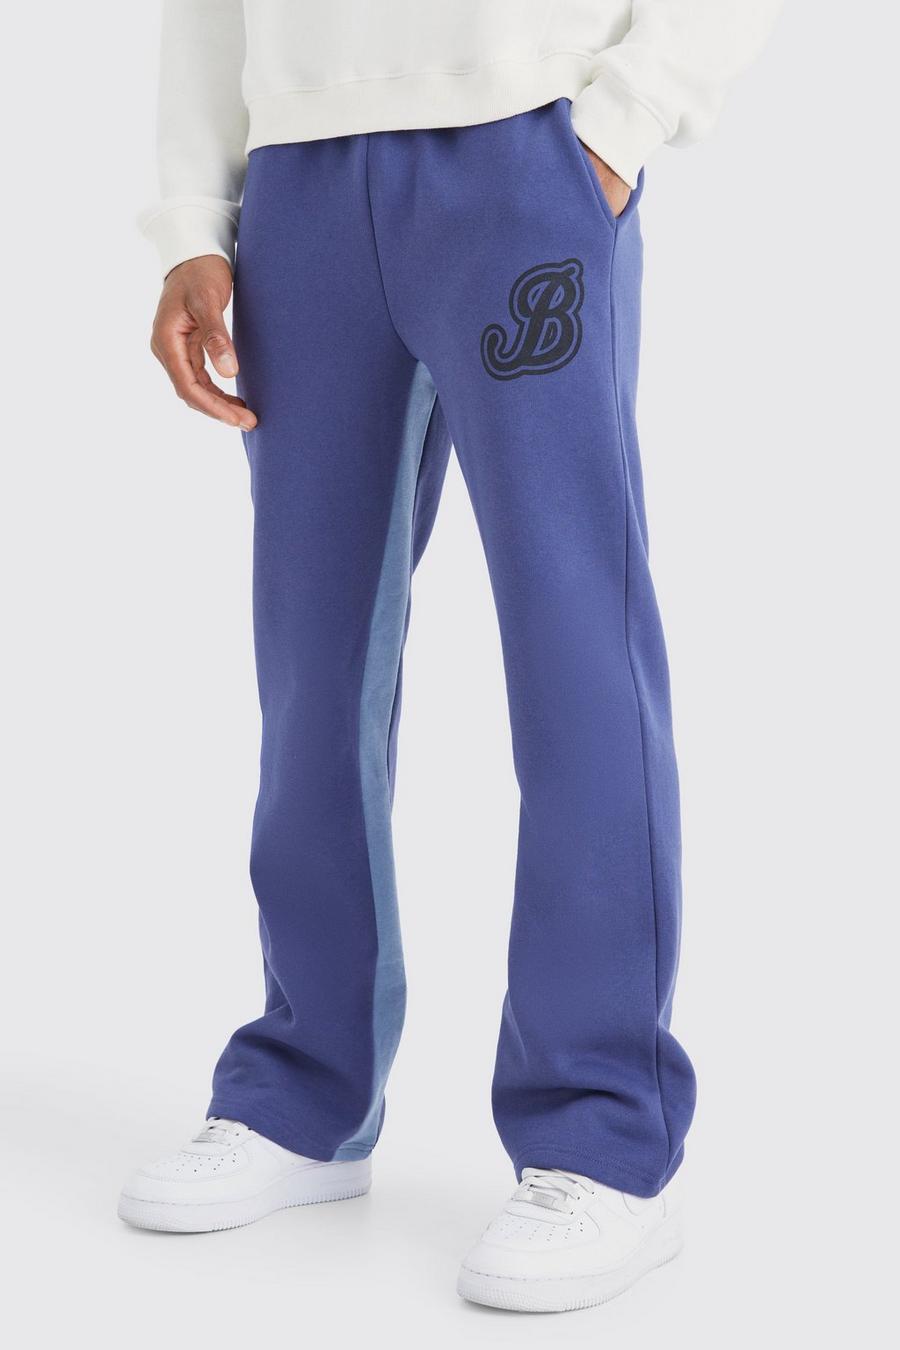 Pantaloni tuta stile Varsity con inserti B, Slate blue image number 1